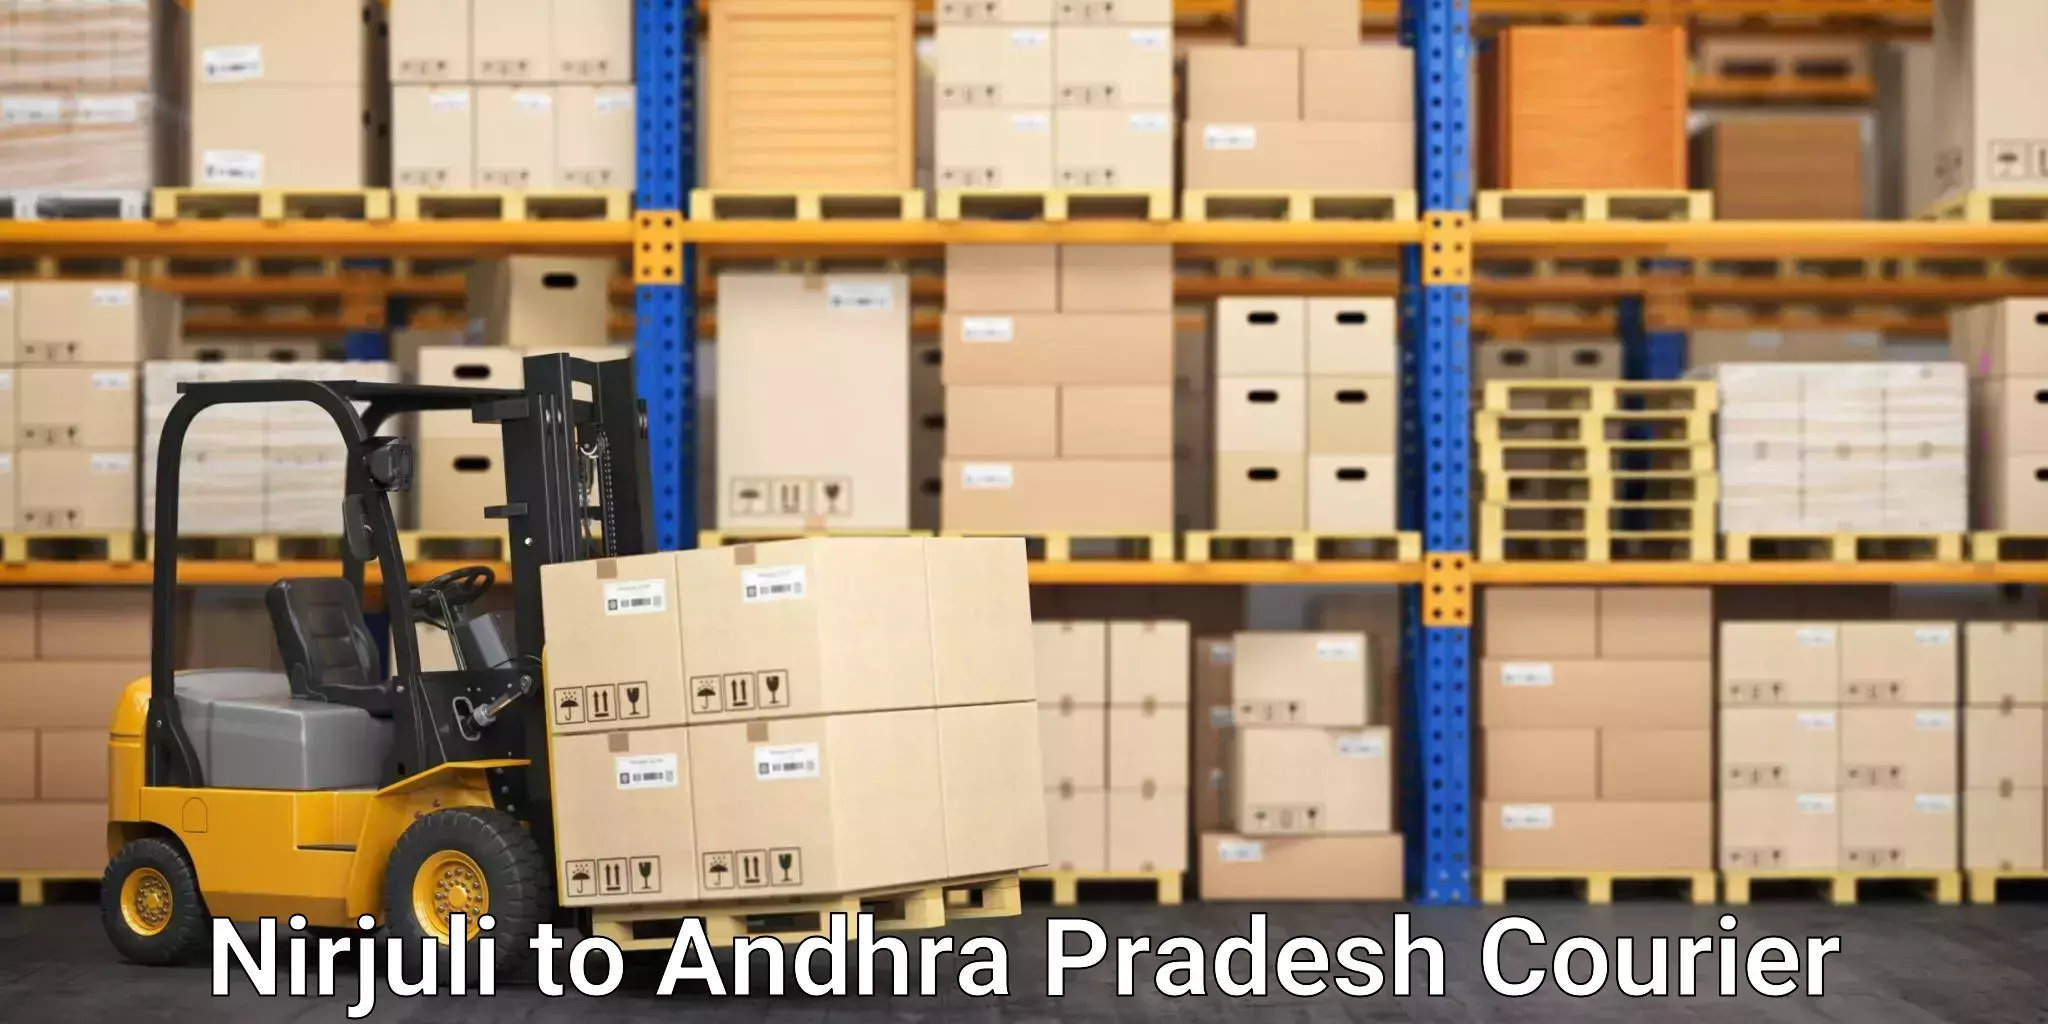 Bulk courier orders Nirjuli to Andhra Pradesh